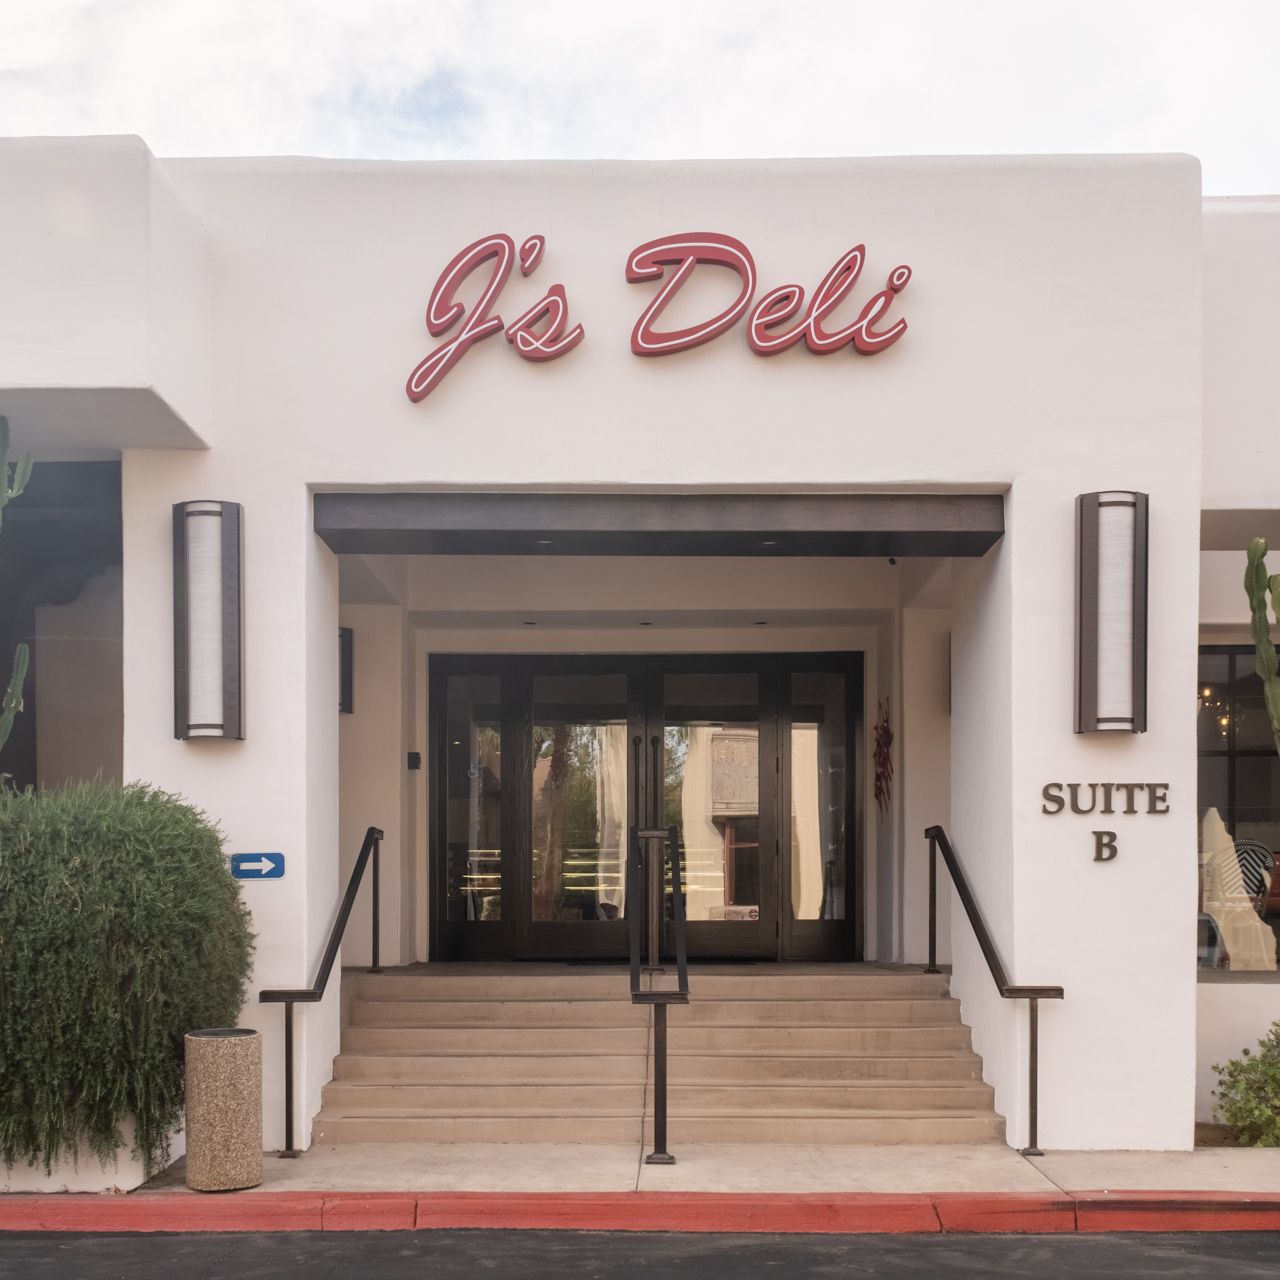 J's Deli Restaurant - Palm Desert, CA | OpenTable